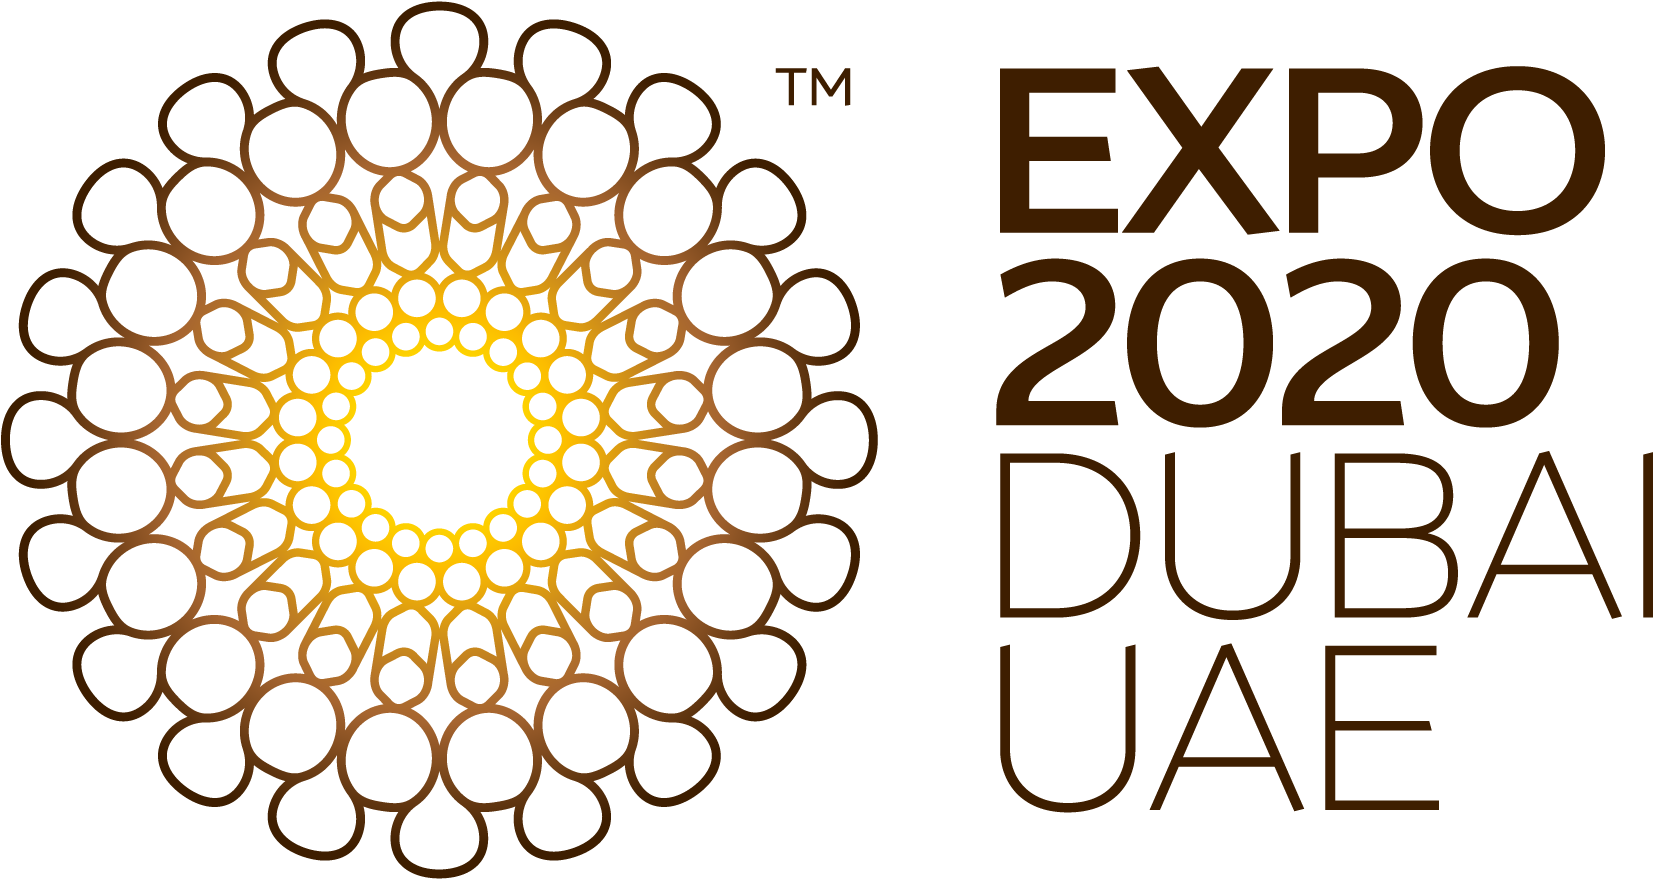 Dubai expo 2020 logo